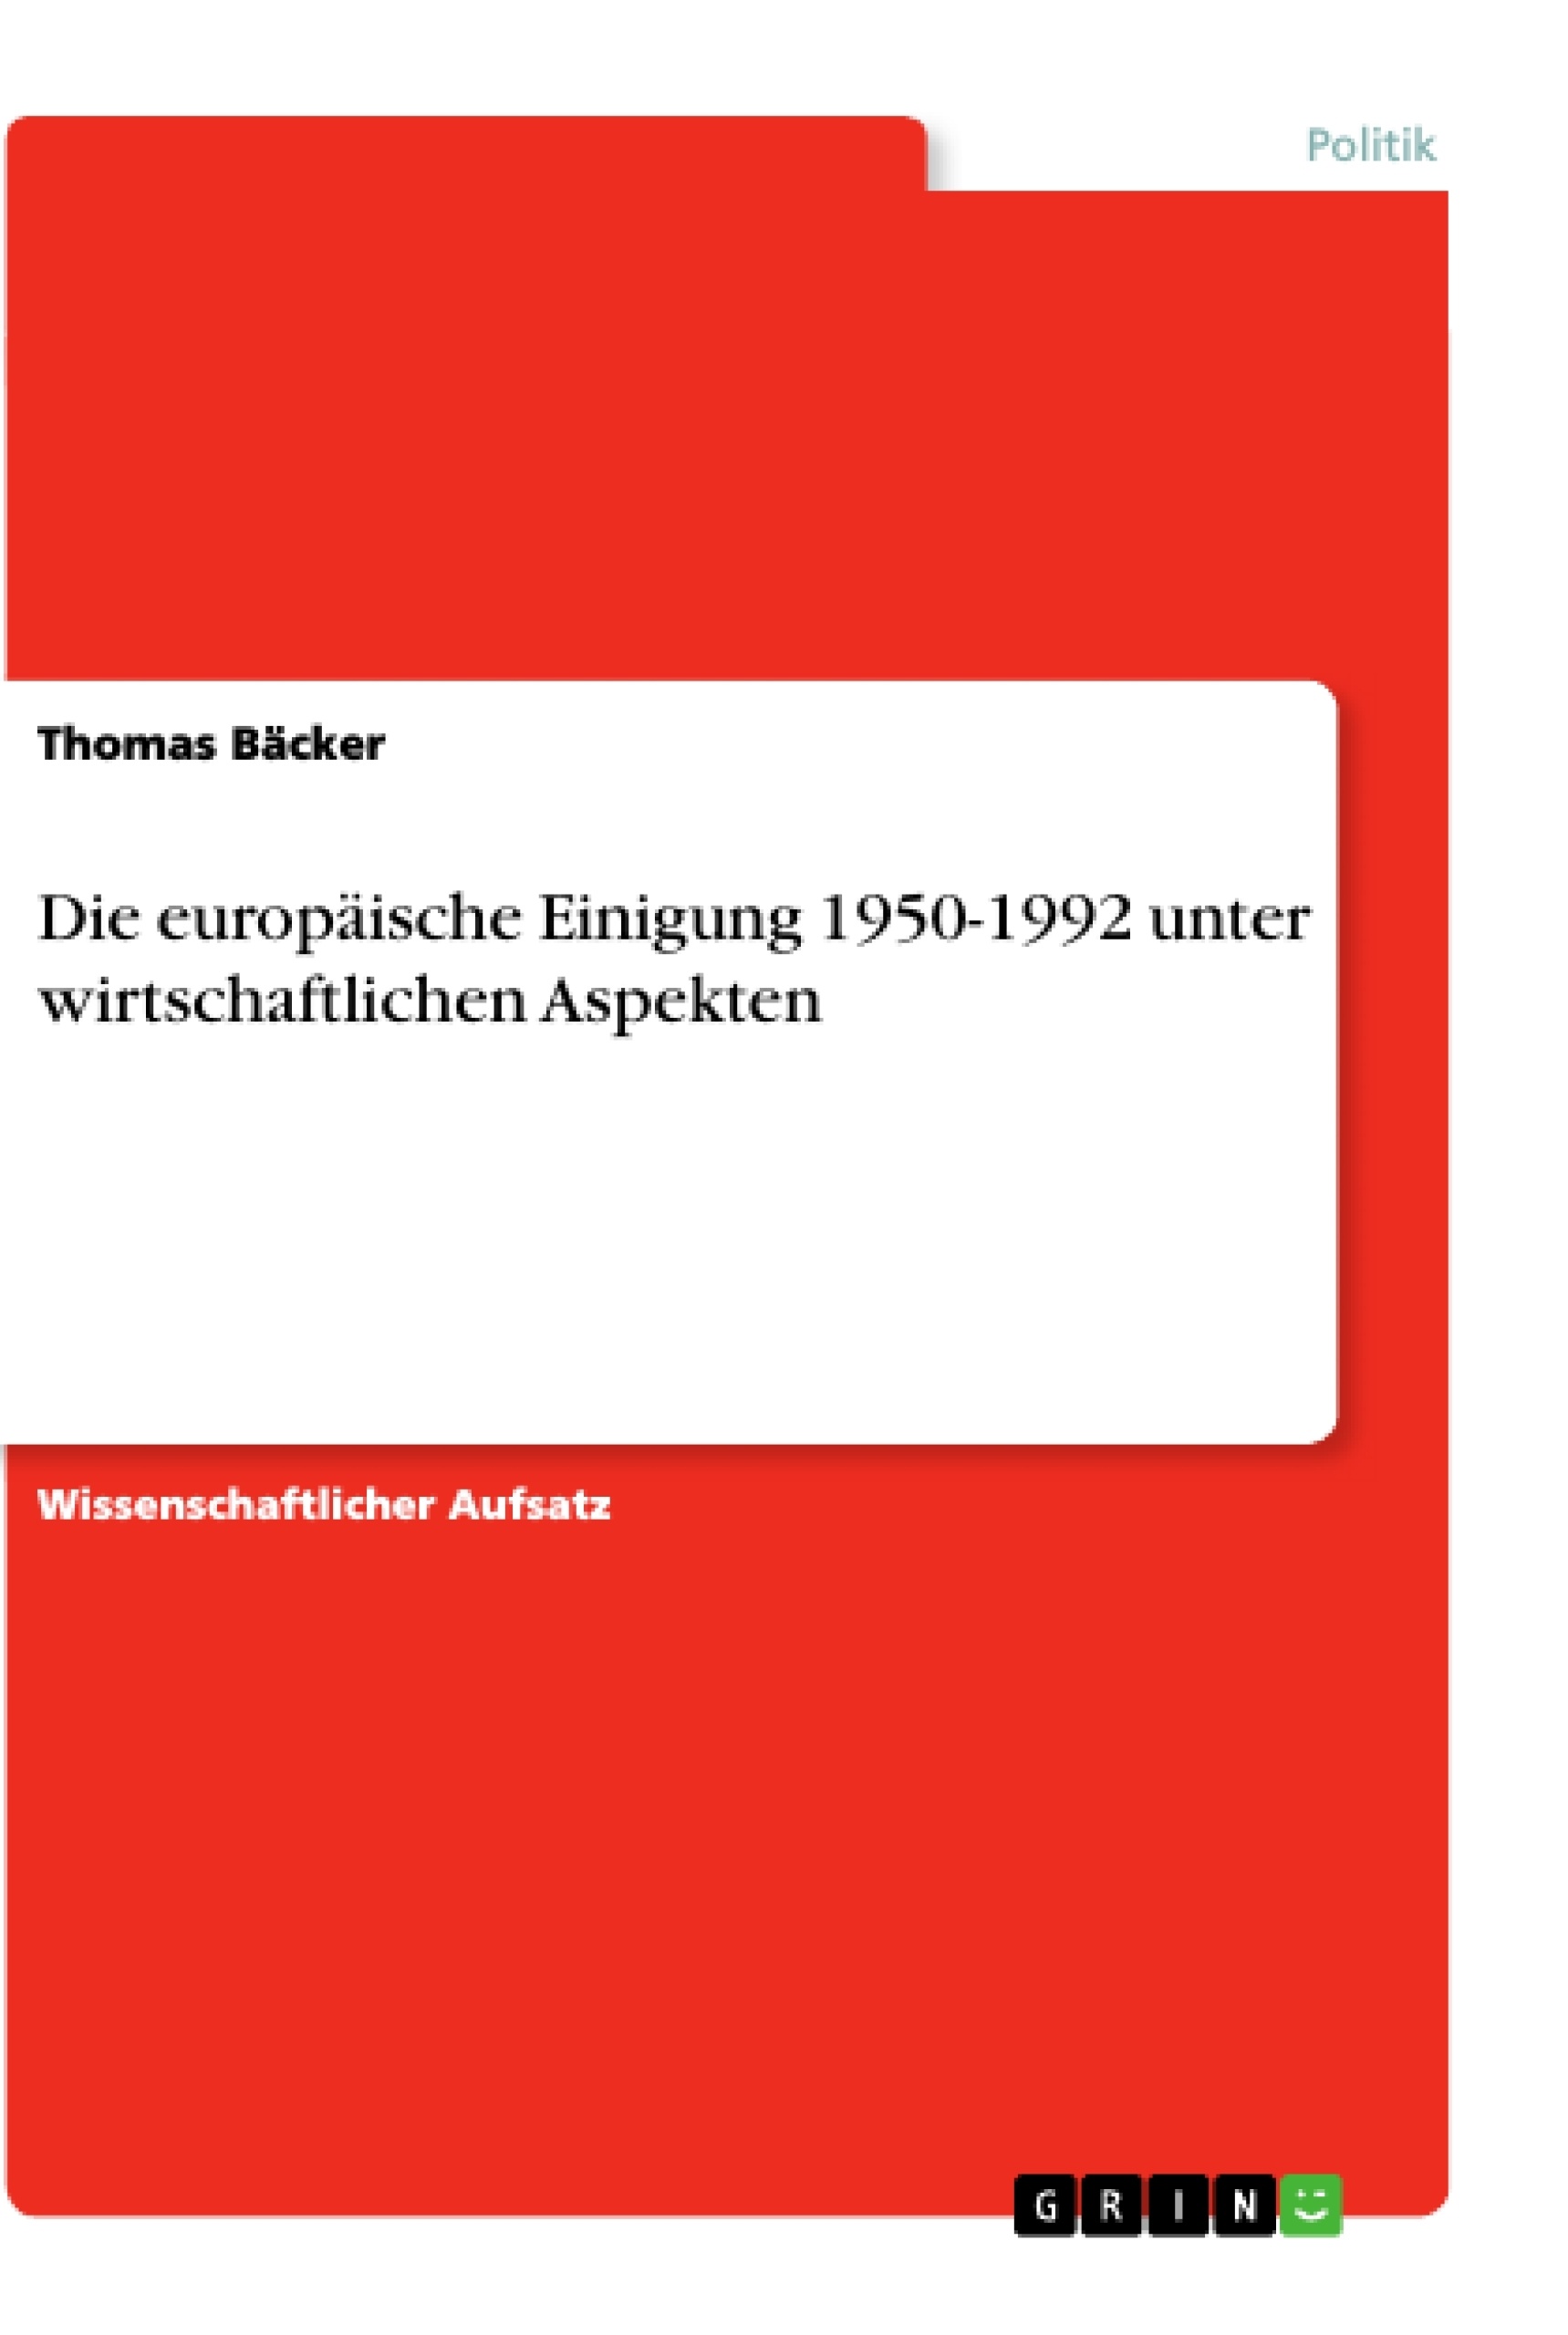 Title: Die europäische Einigung 1950-1992 unter wirtschaftlichen Aspekten